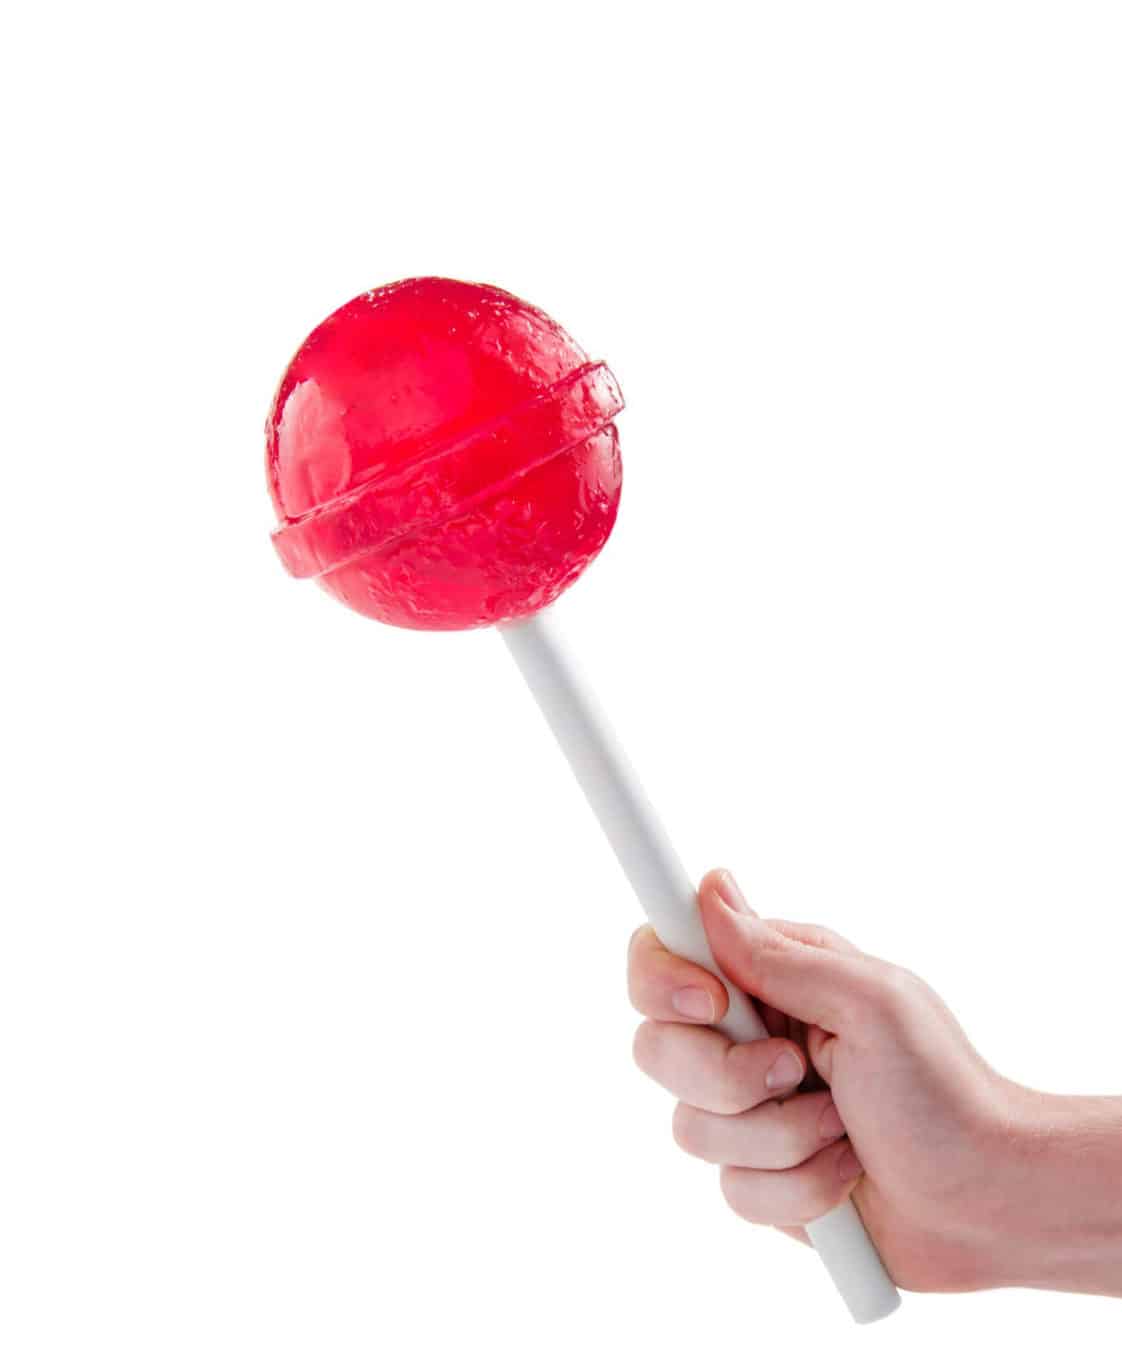 giant twisty swirl round holiday lollipop